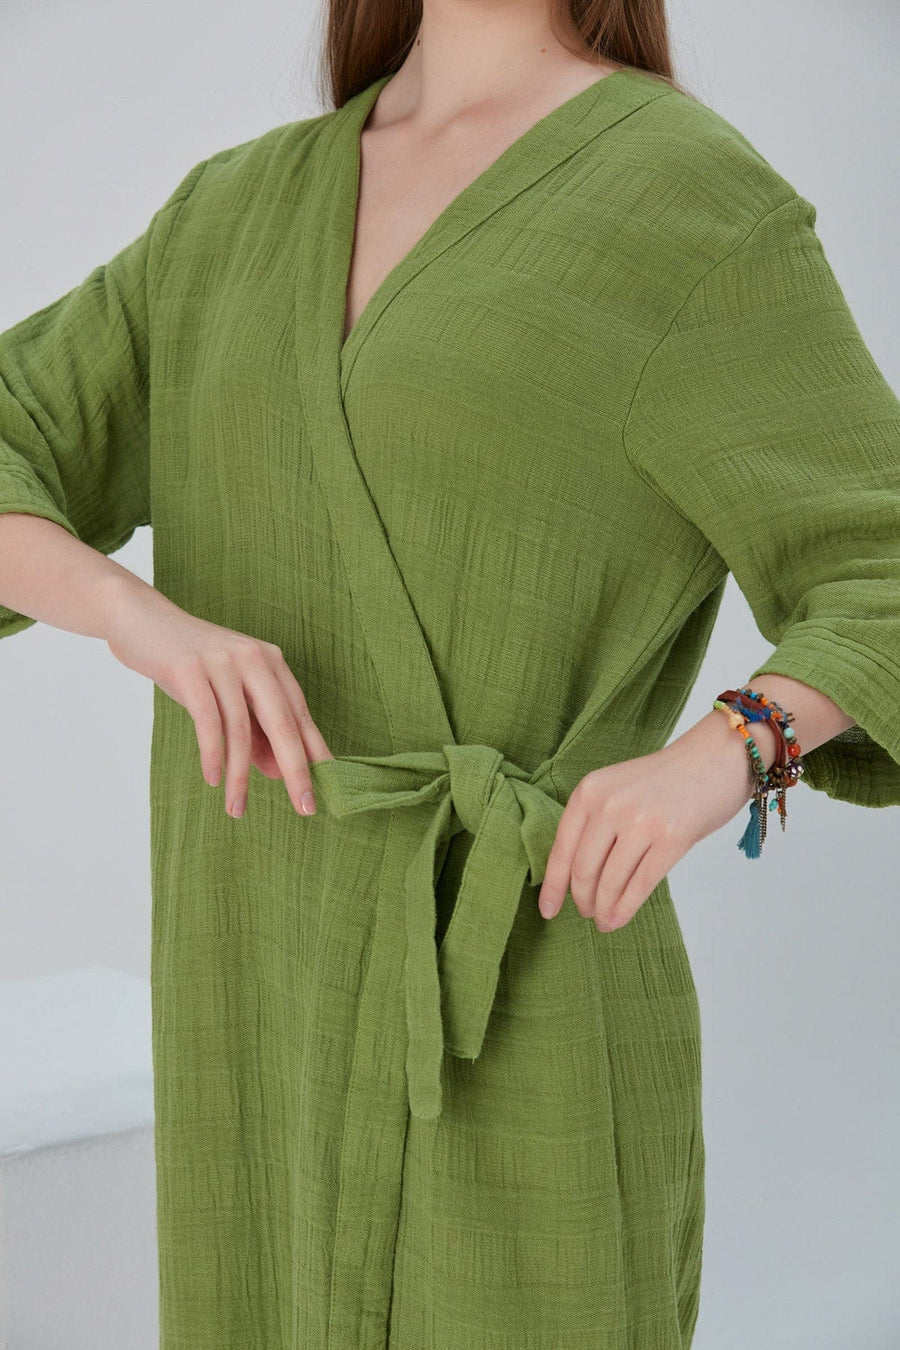 Begonville Bornoz Cara Yandan Bağlamalı Pamuk Bornoz Kimono - Yeşil